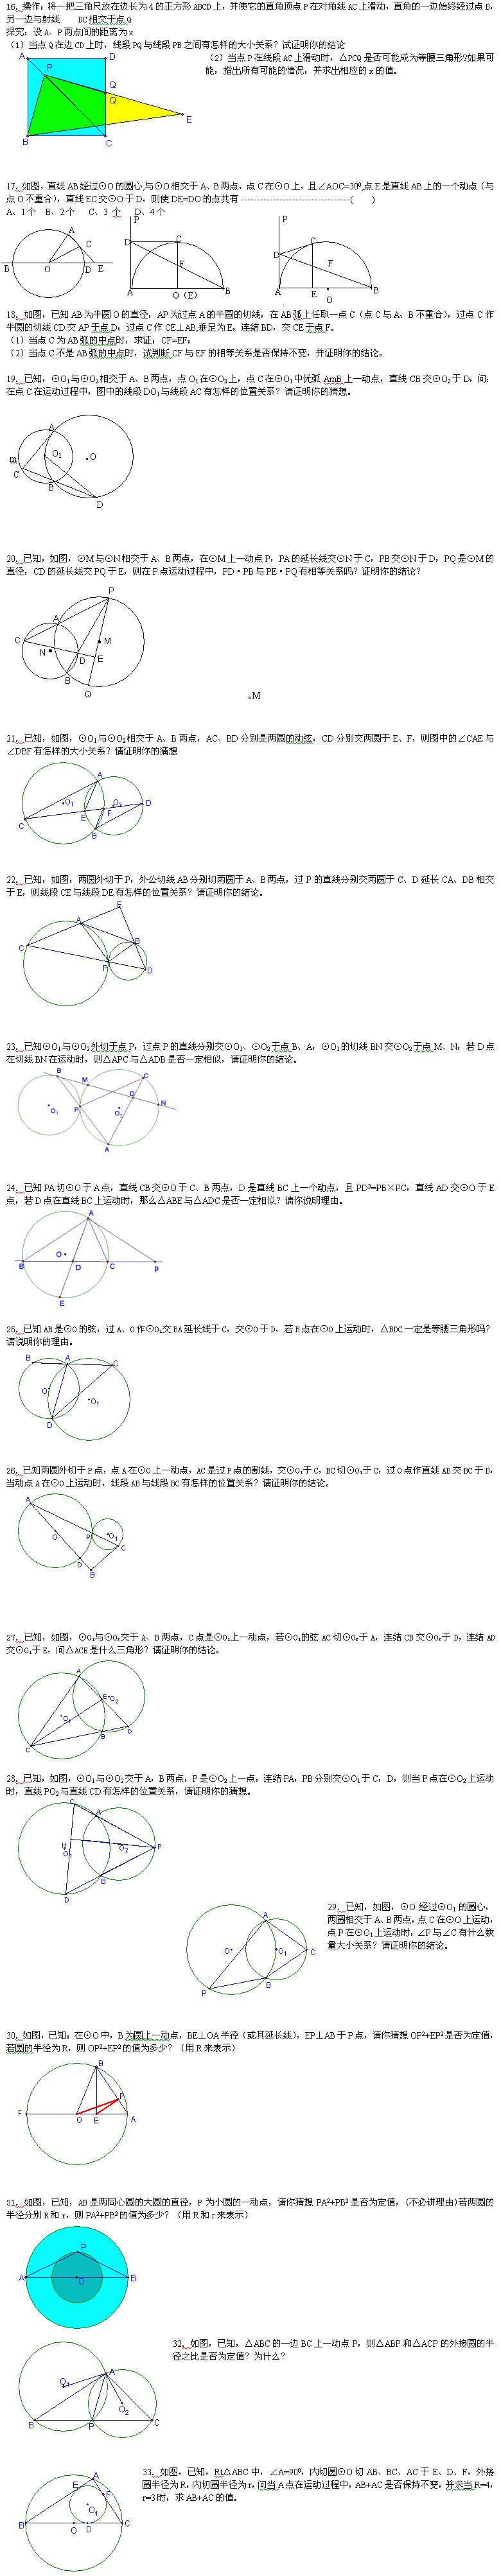 《动态数学问题50例》(二)2